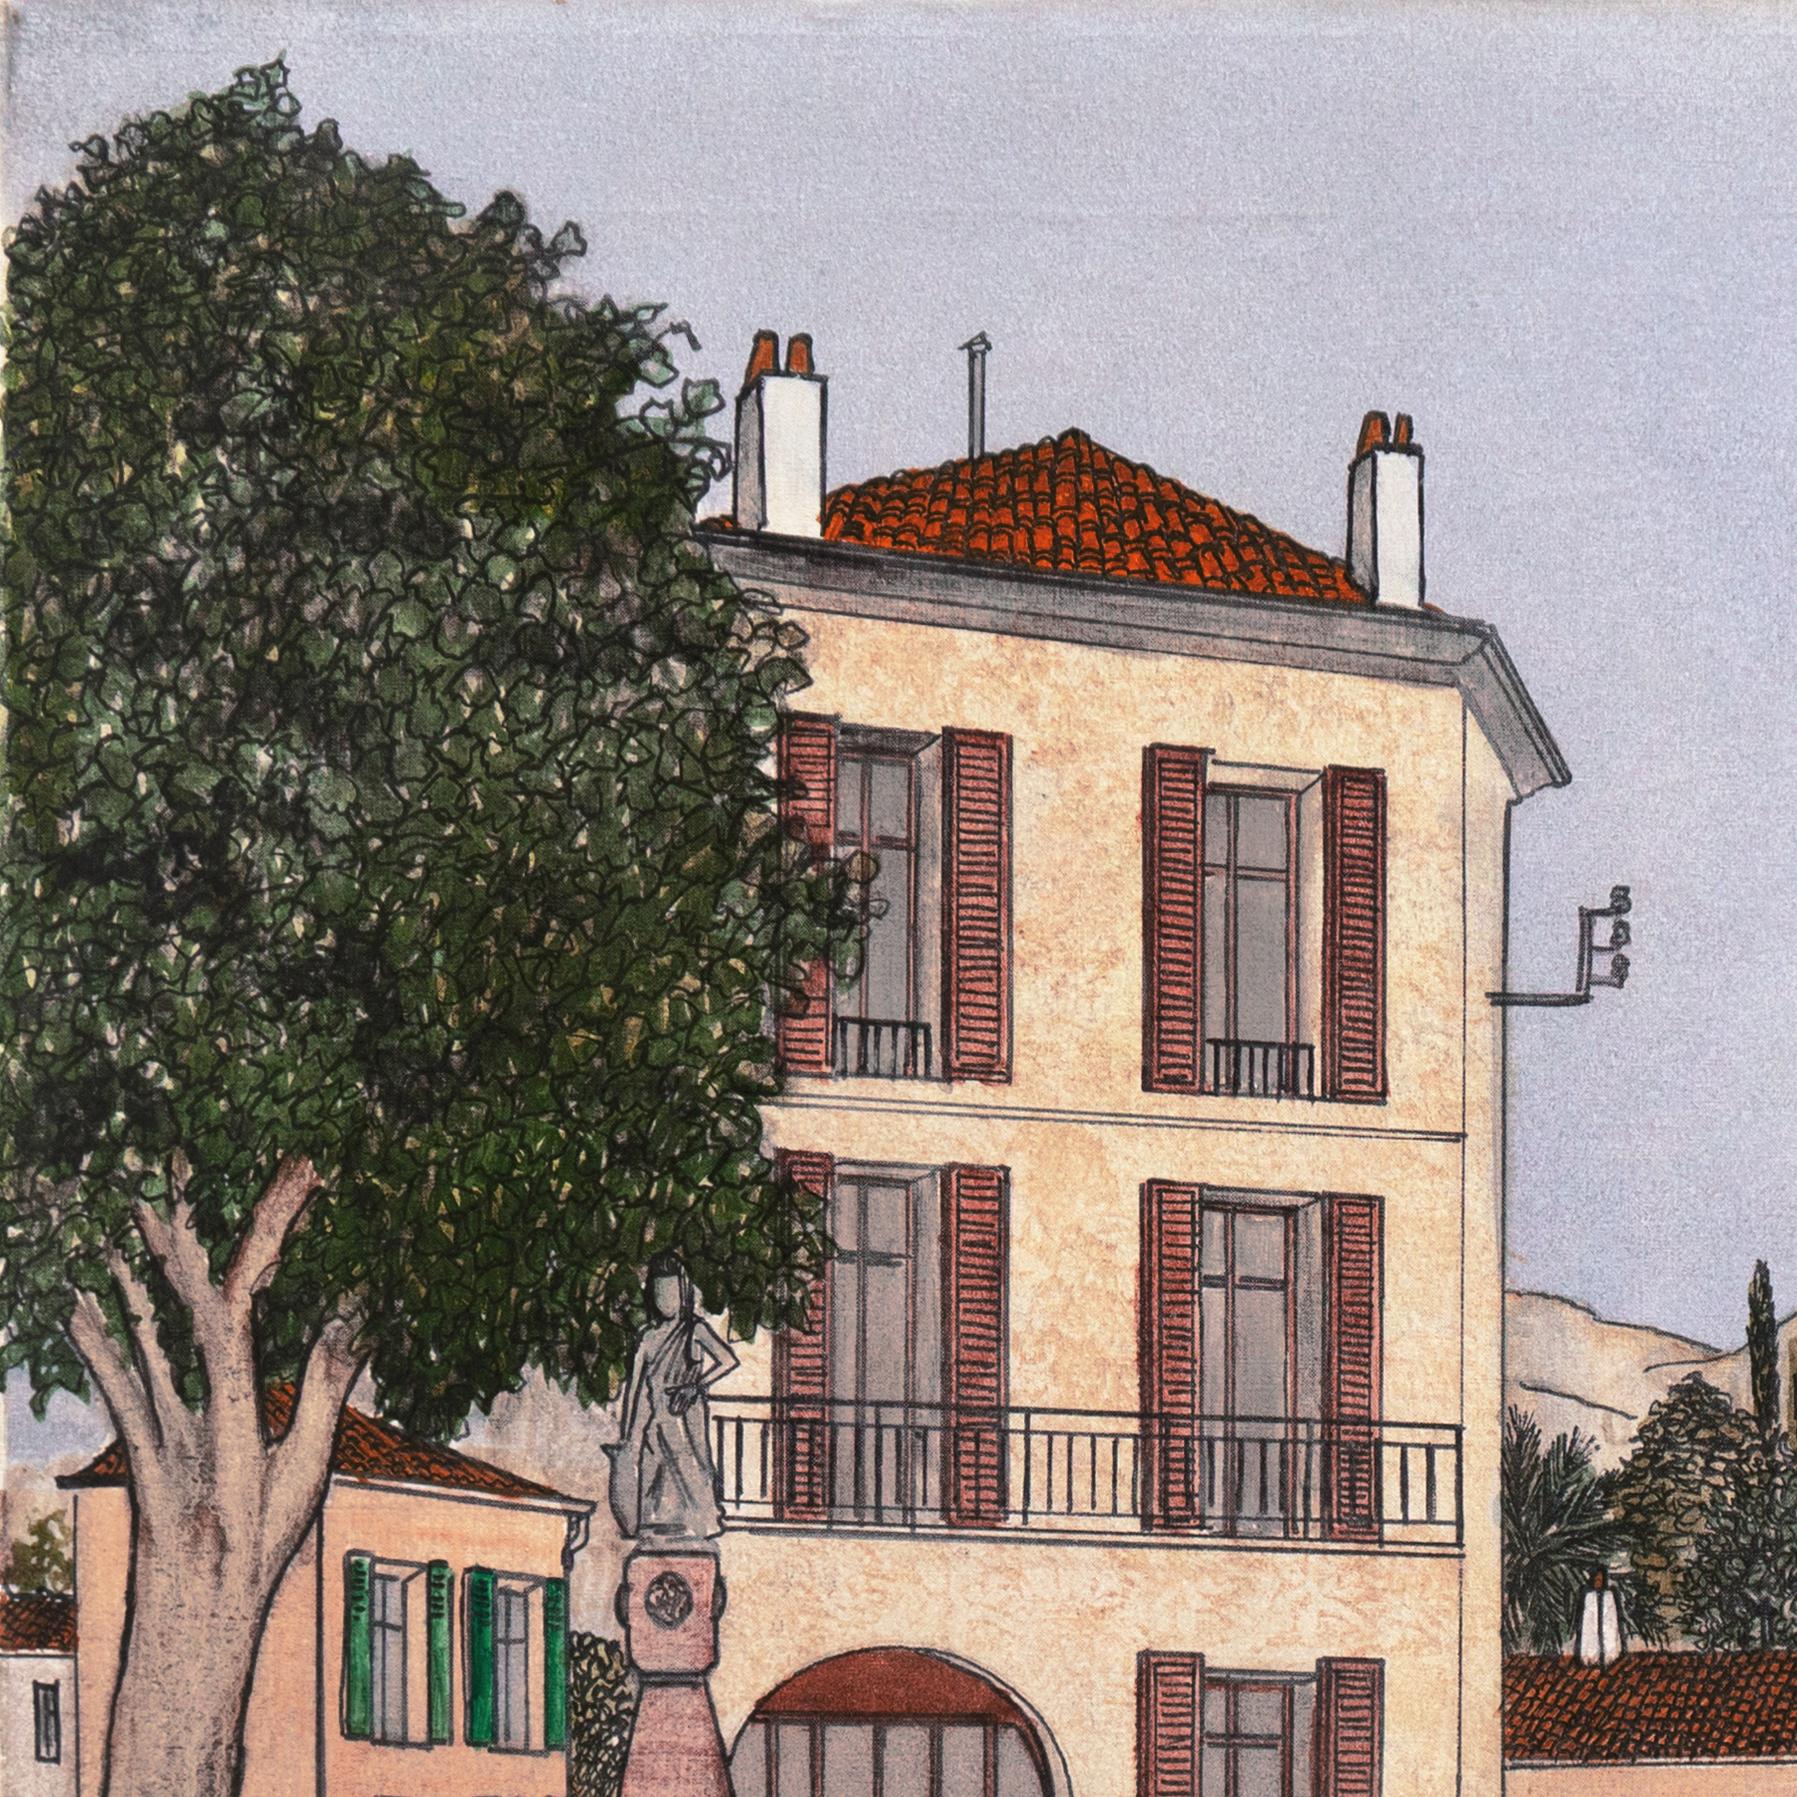  'Mougins', Côte d'Azur, School of Paris, France, Ecole des Beaux Arts, Lyon For Sale 1